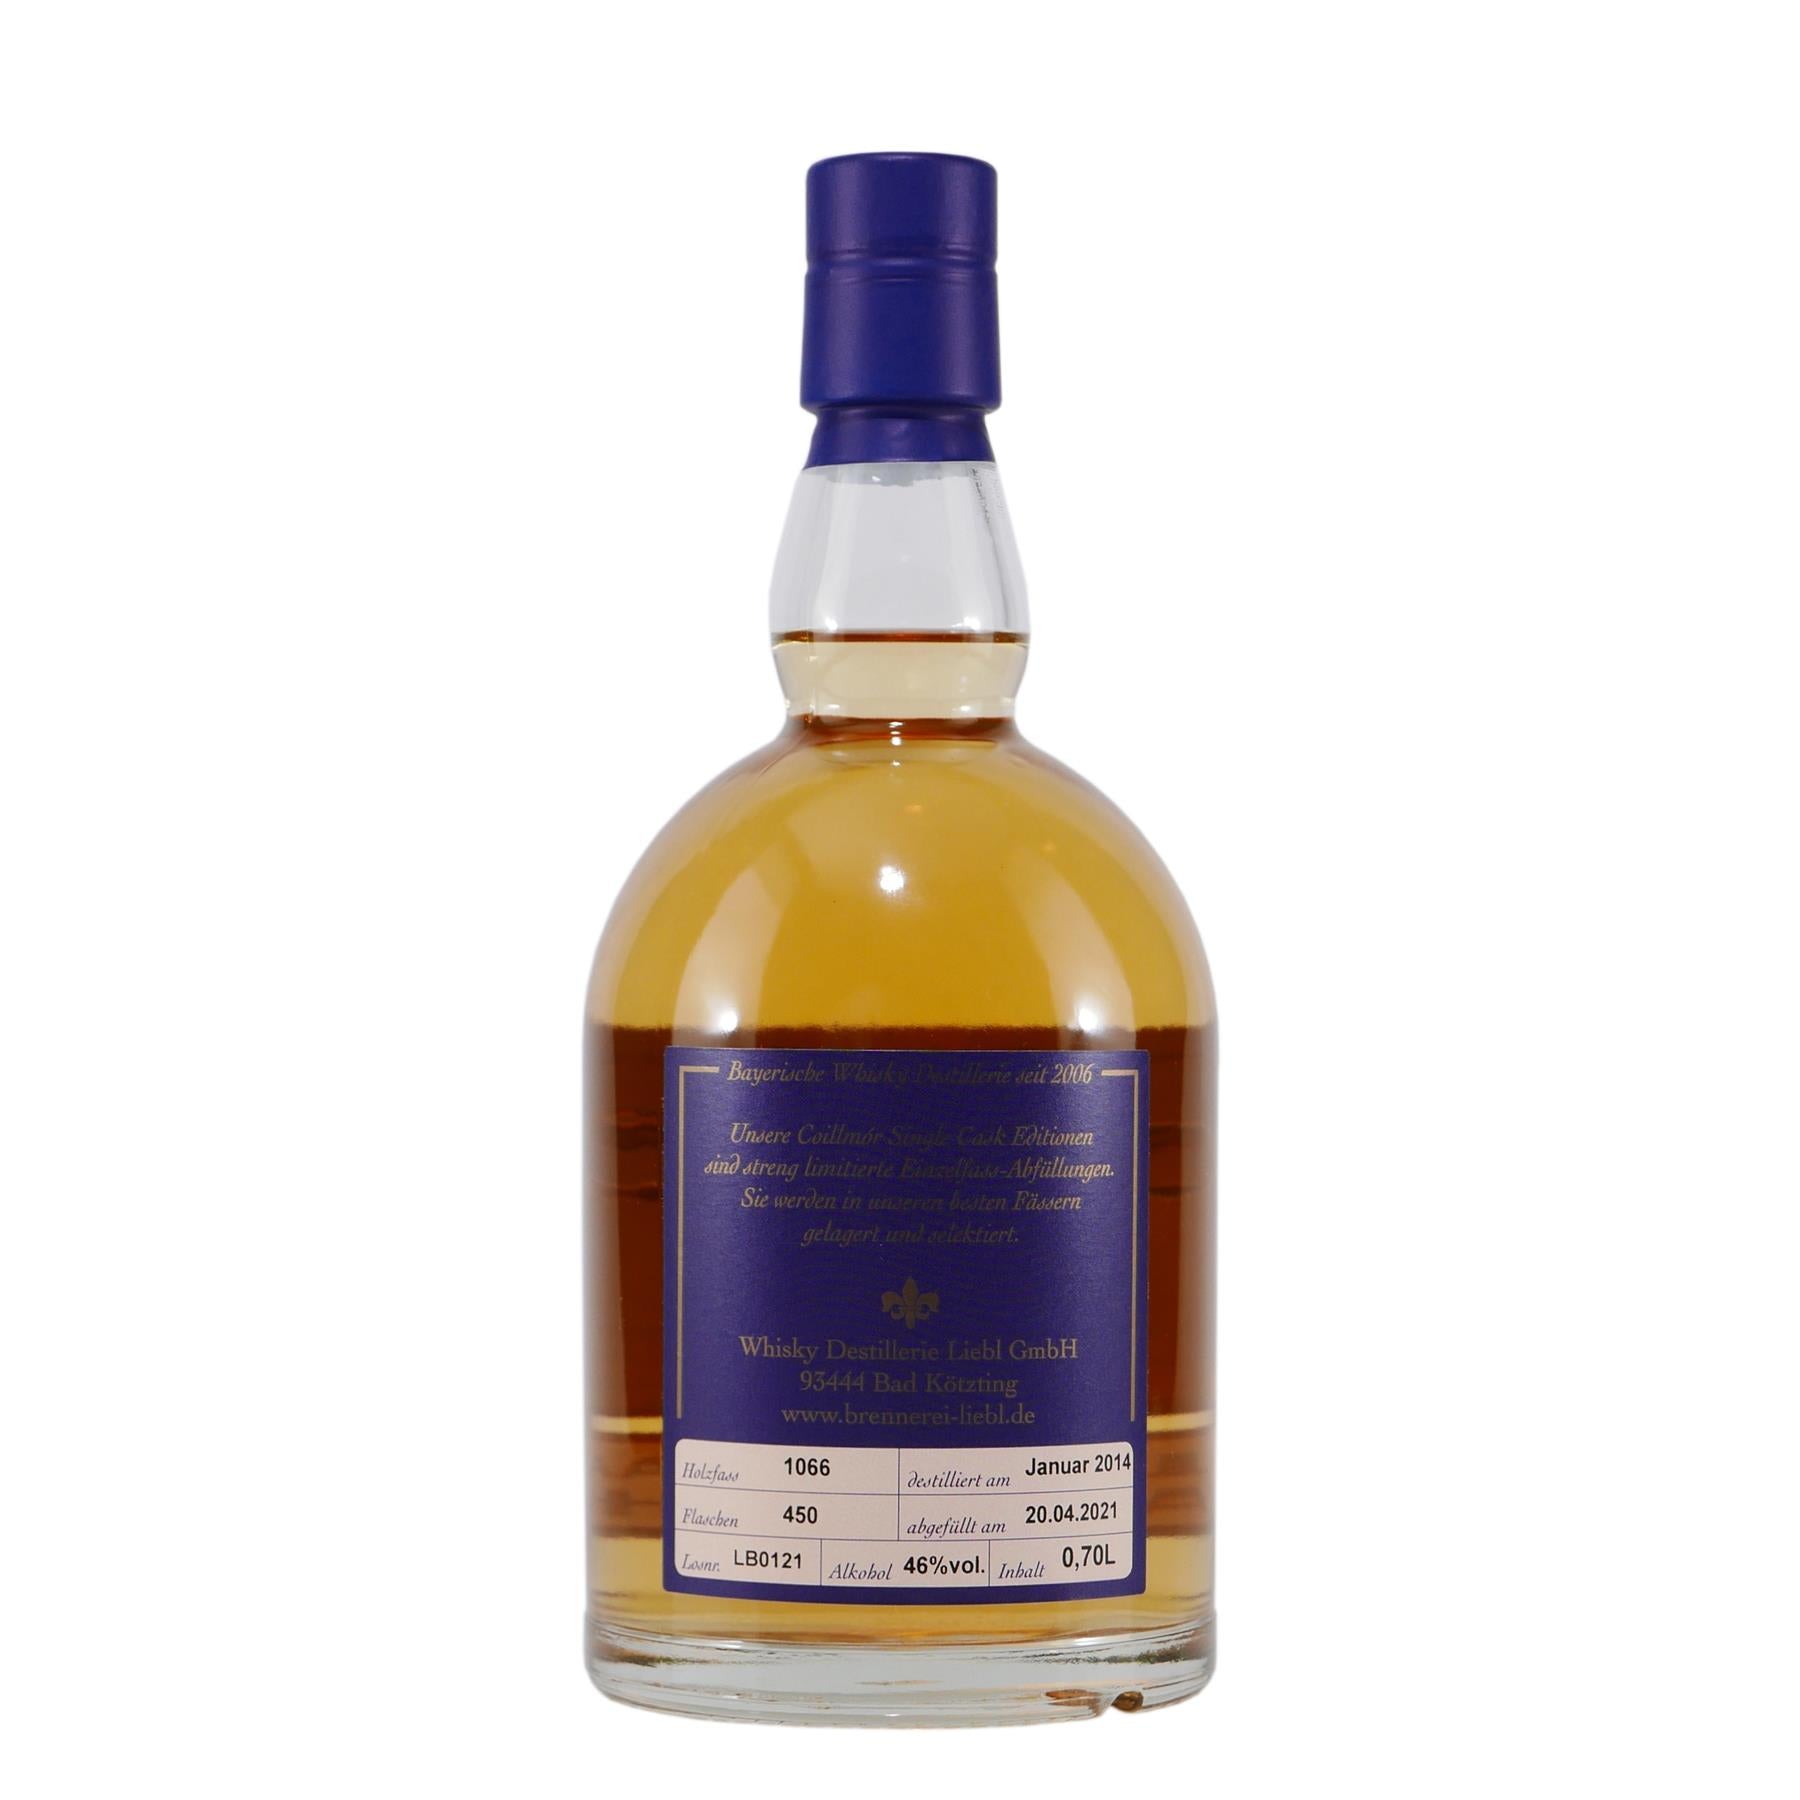 Liebl Coillmór Single Malt Whisky Albanach Peat Islay Cask